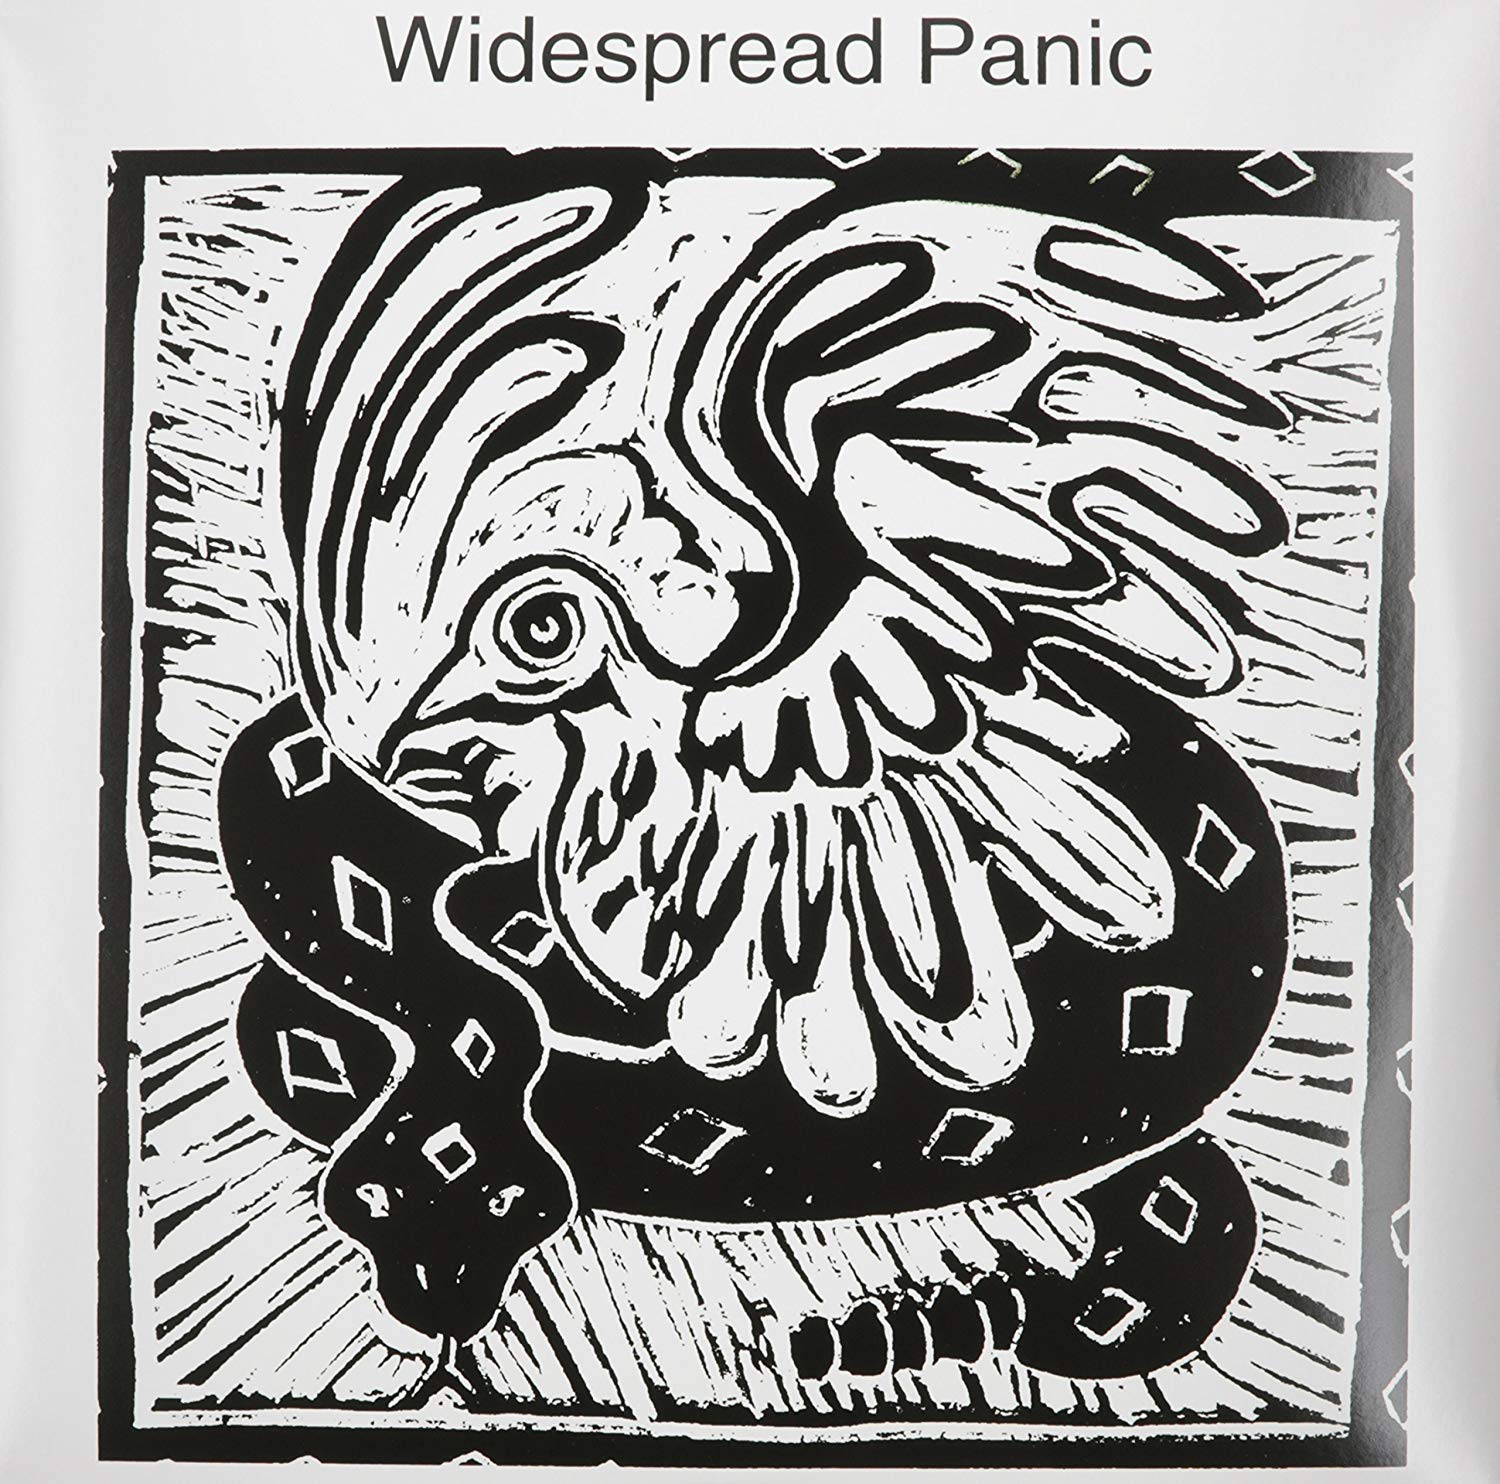 Vinile Widespread Panic - Widespread Panic NUOVO SIGILLATO, EDIZIONE DEL 15/07/2014 SUBITO DISPONIBILE